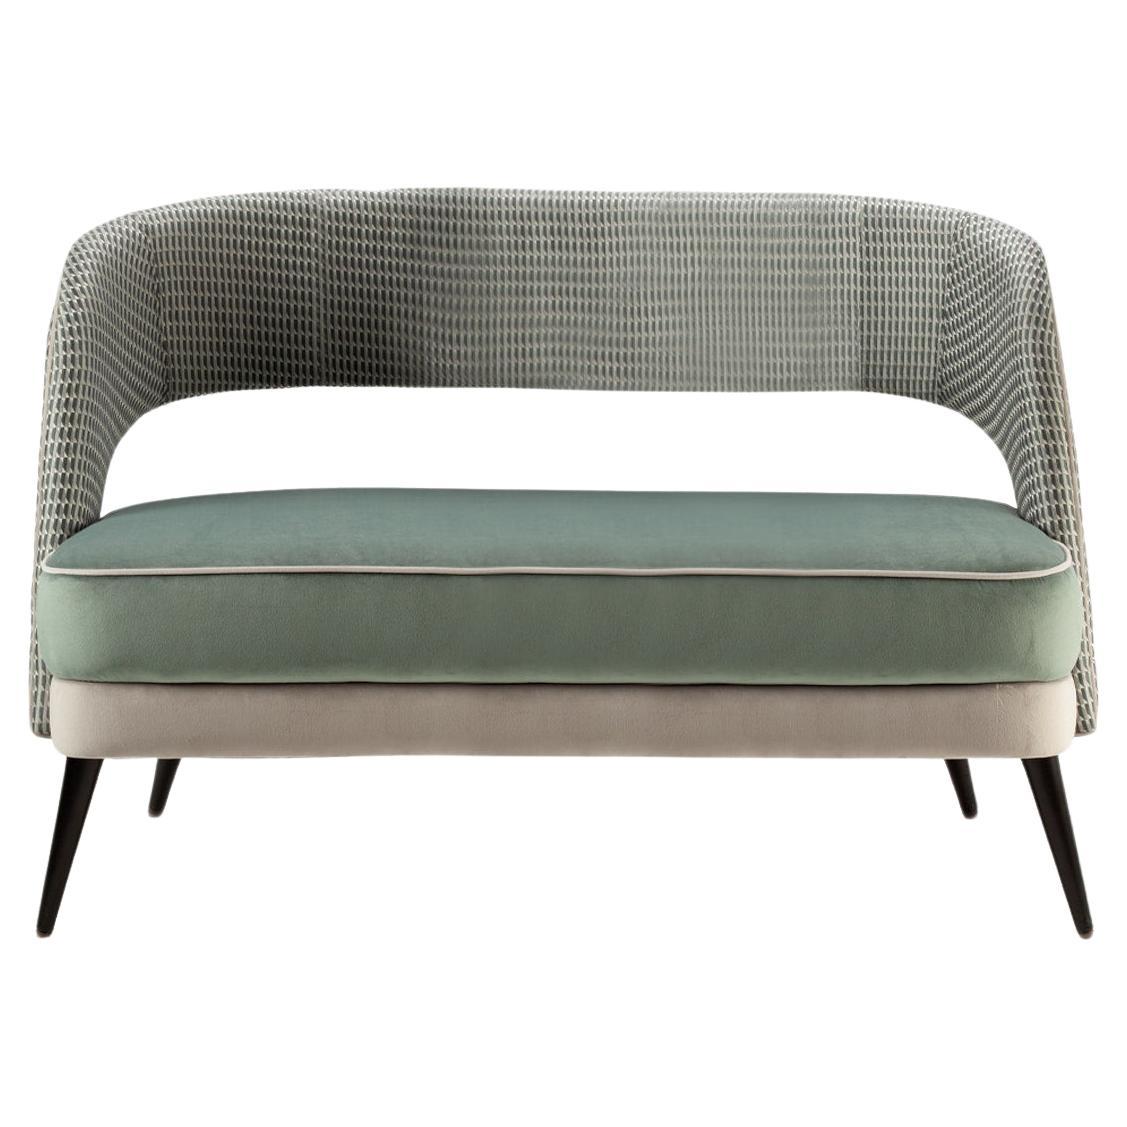 Das bequeme und elegante Sofa Ava ist ein vielseitiges Möbelstück, bei dem der Kreativität keine Grenzen gesetzt sind. Stoffe, Massivhölzer, Lacke und Messingbeschläge werden auf vielfältige Weise ausgewählt und kombiniert, um die perfekte